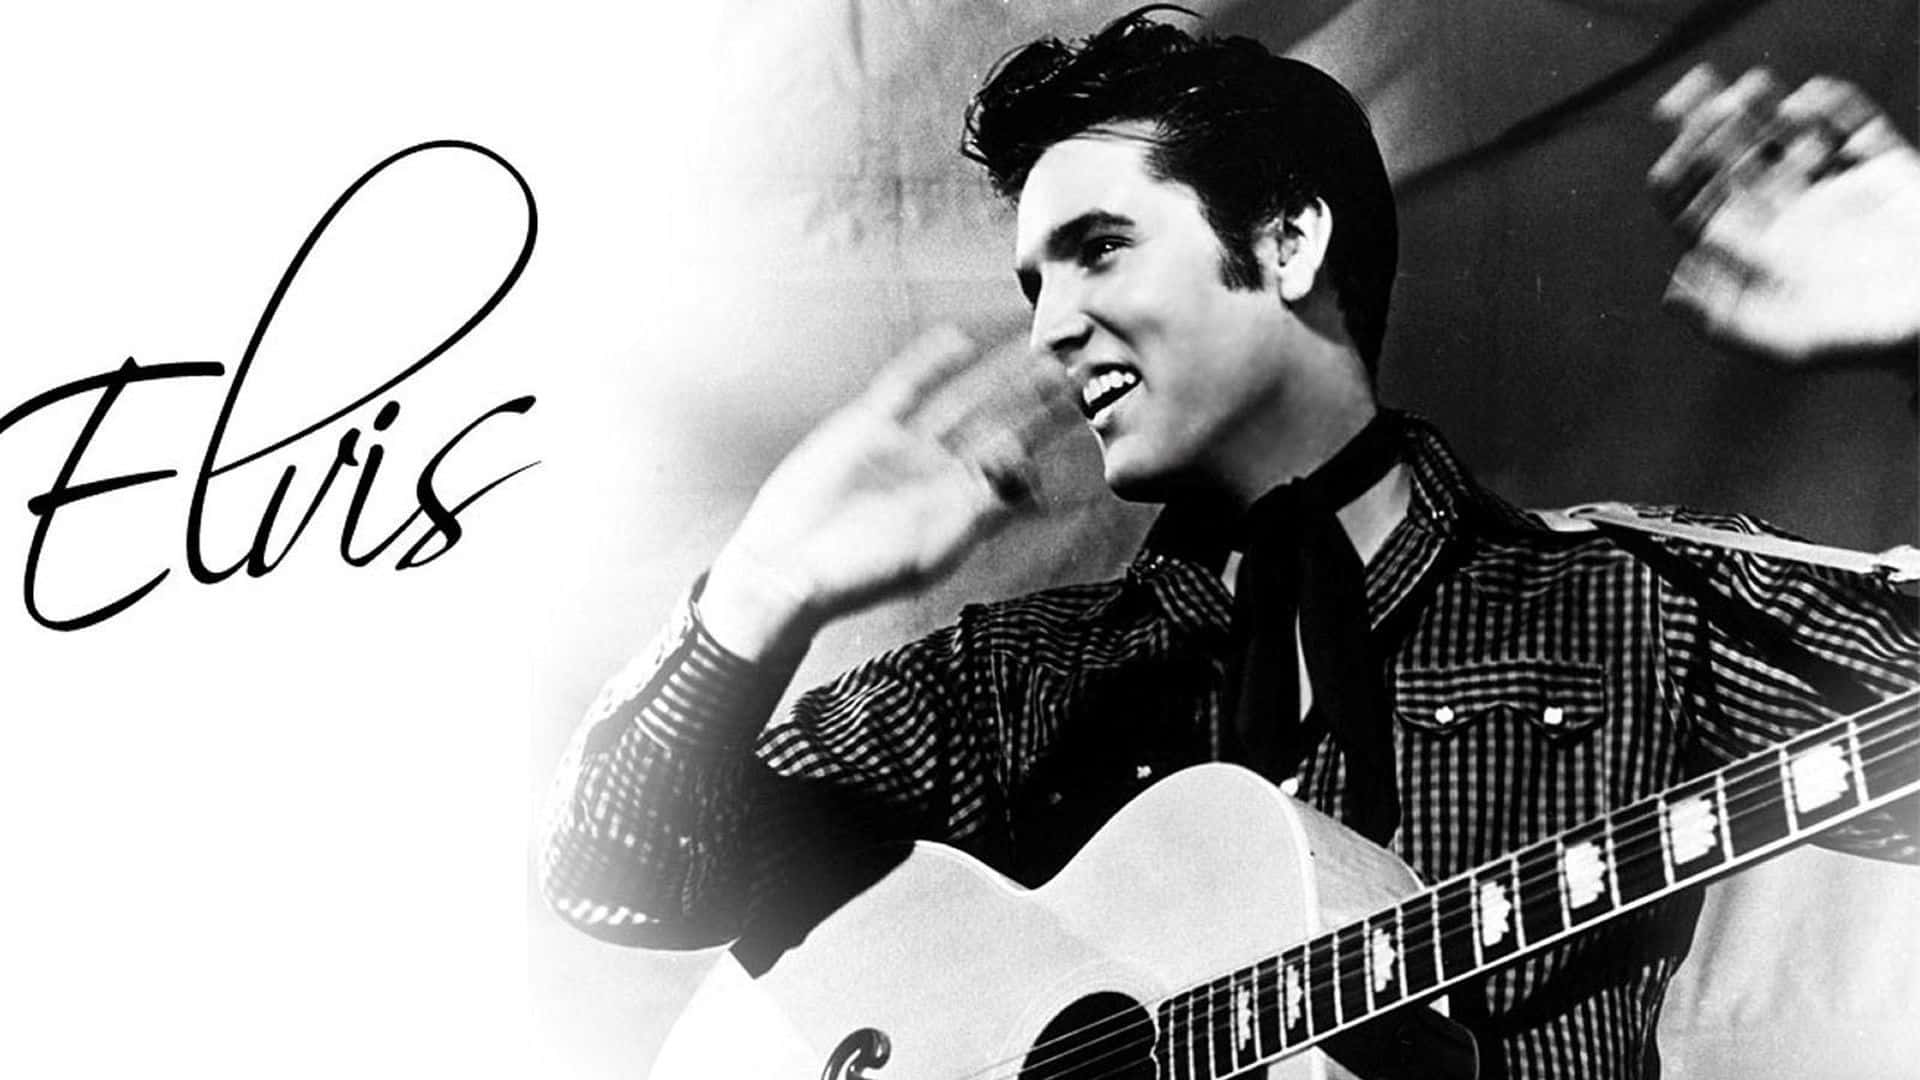 Ikoniskakungen Av Rock, Elvis Presley. Wallpaper